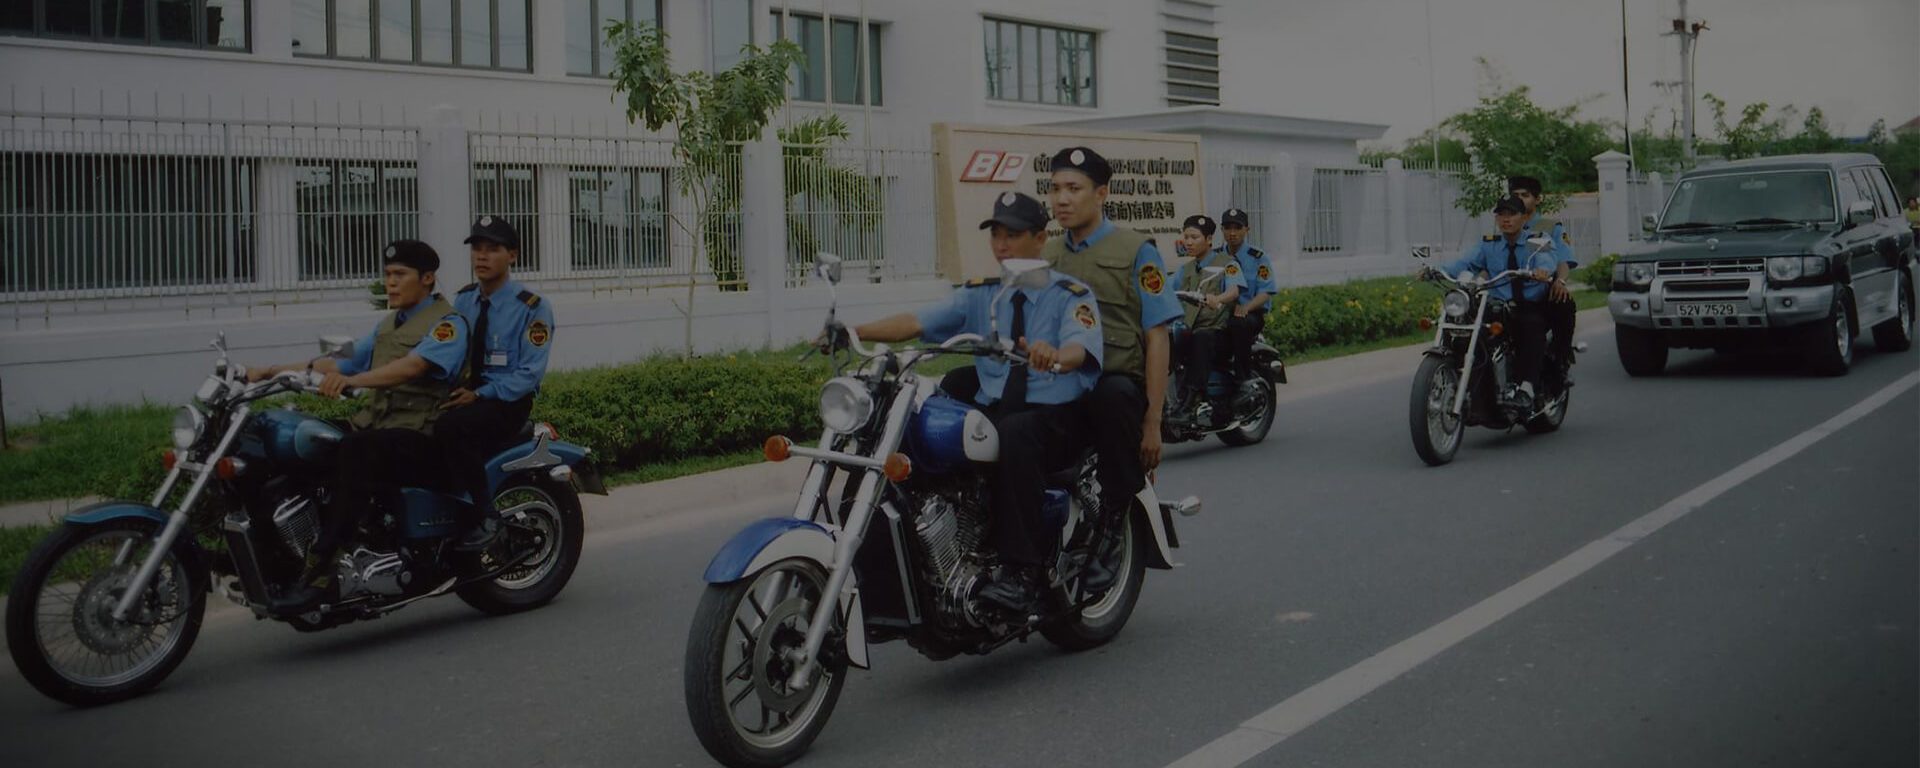 Công ty dịch vụ bảo vệ Đất Việt